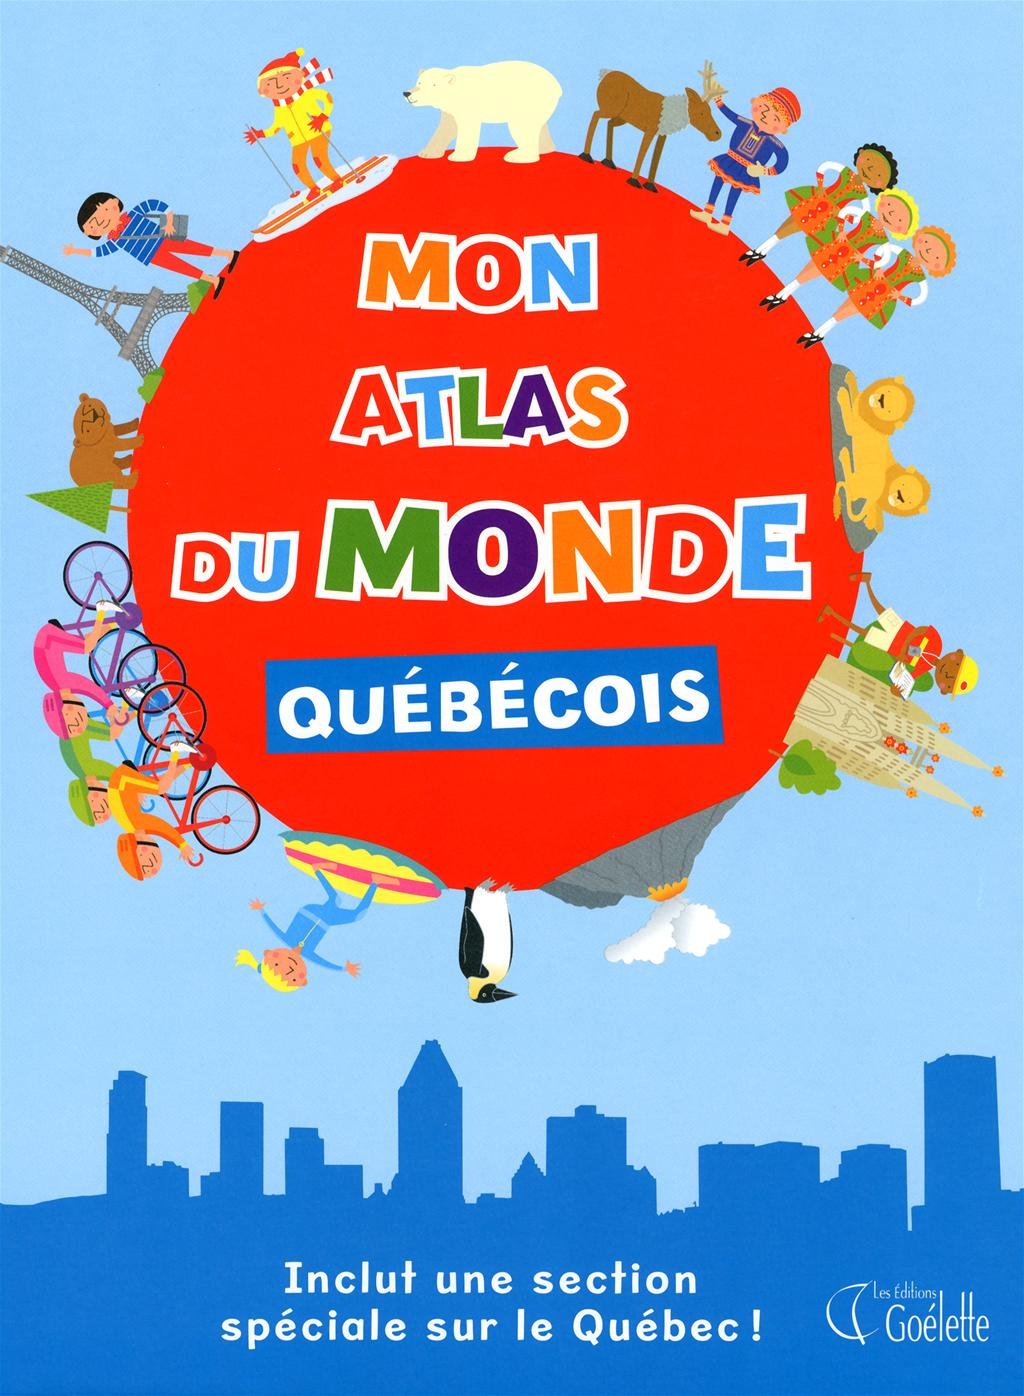 Mon atlas du monde québécois